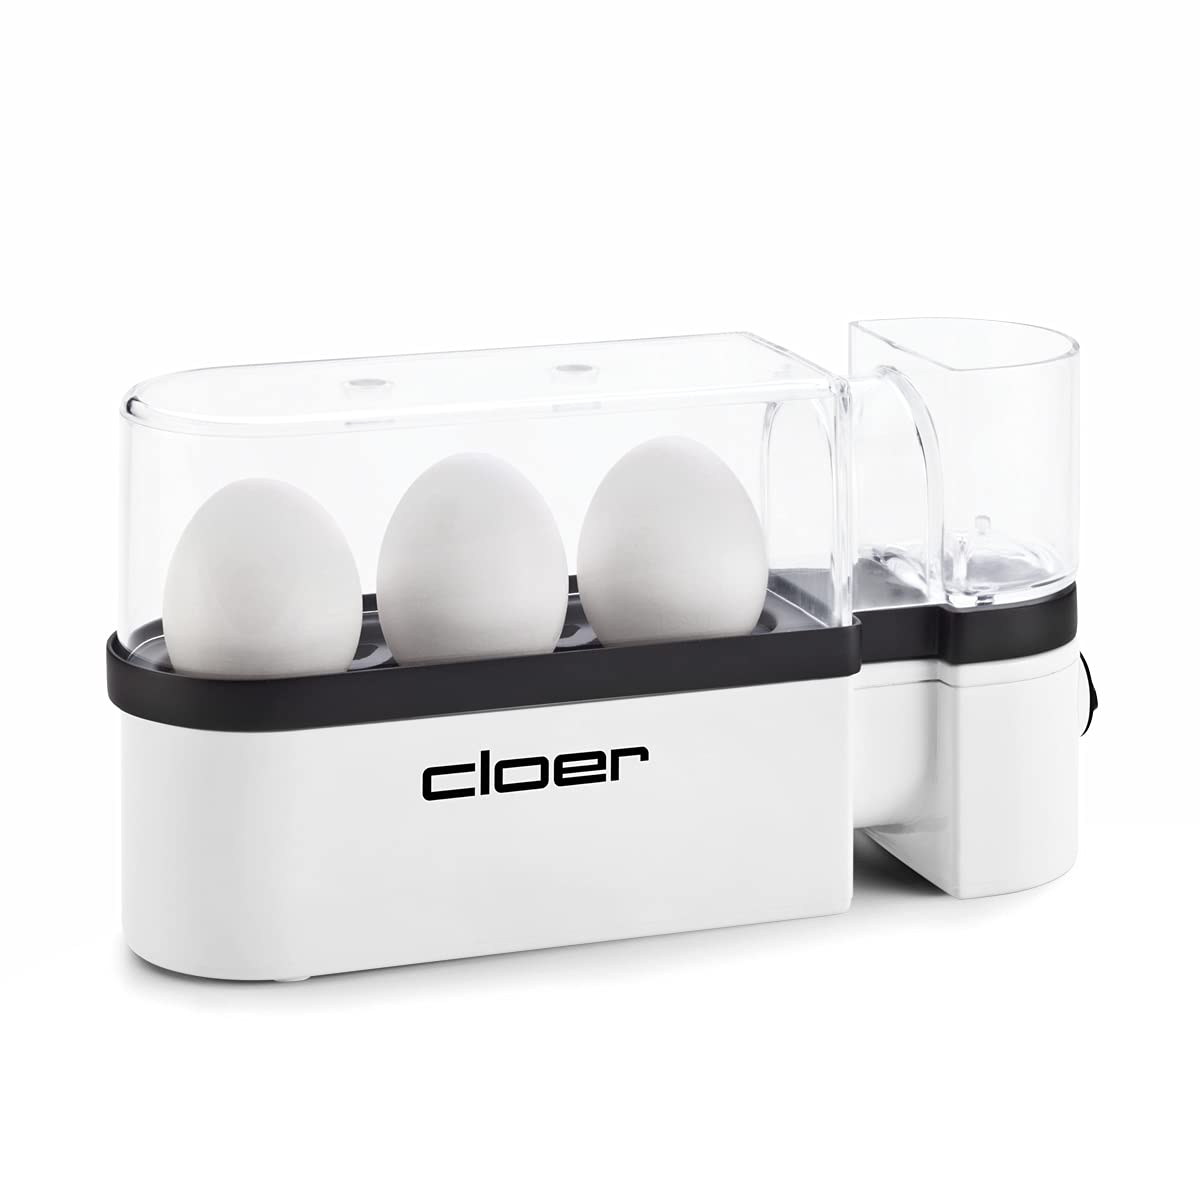 Cloer 6021 Eierkocher, bis zu 3 Eier, herausnehmbarer Eierträger, Servierfunktion, 300 Watt, Kunststoff, Weiß